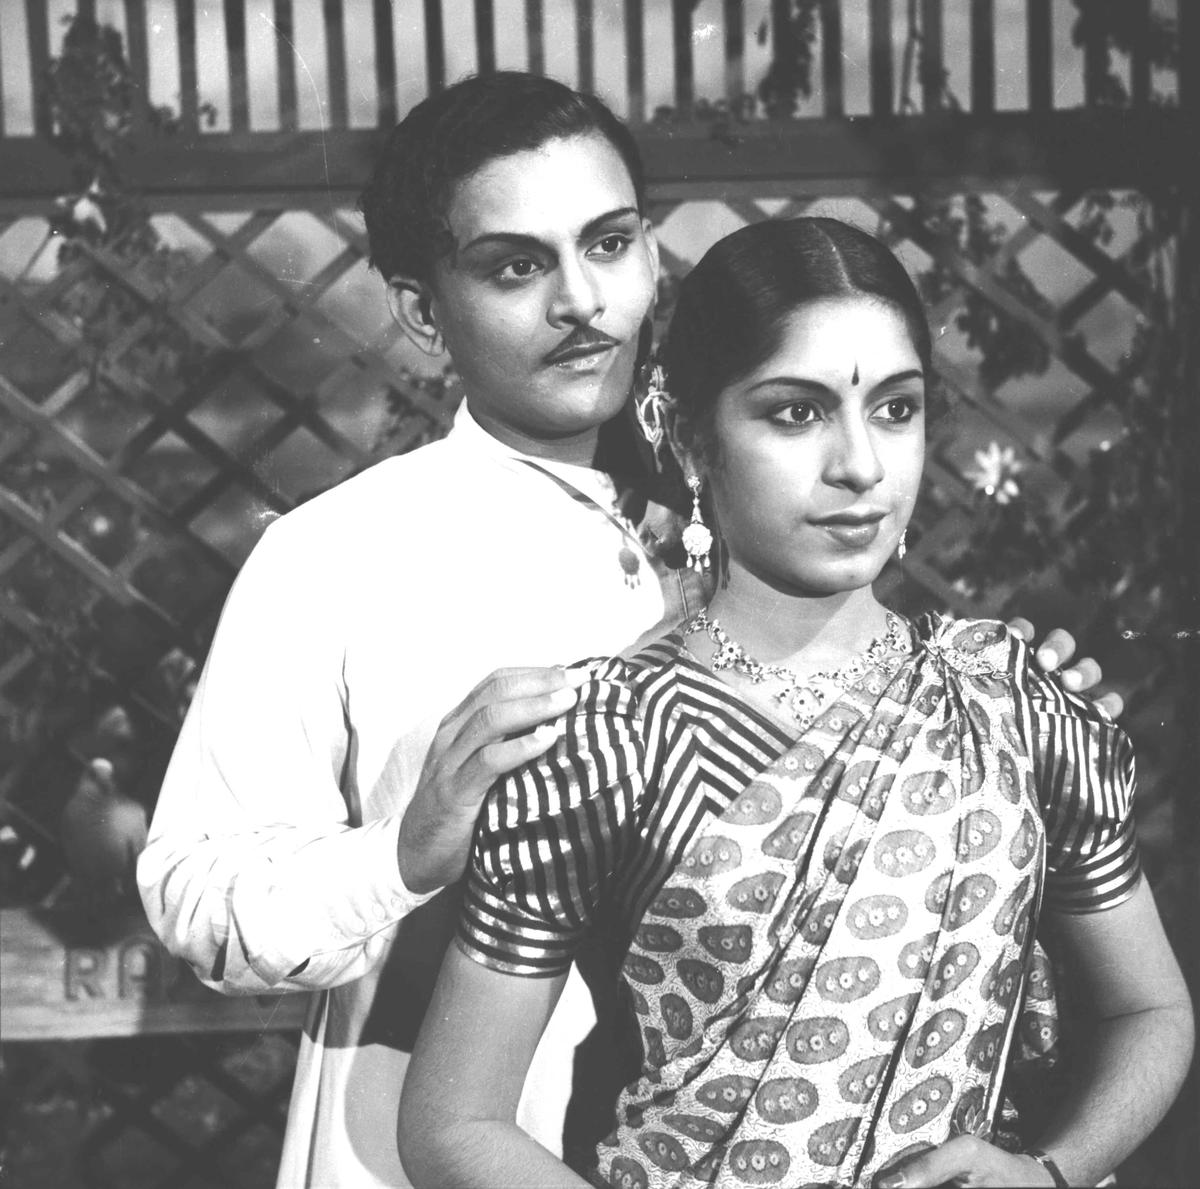 A still from Tamil film Naam Iruvar